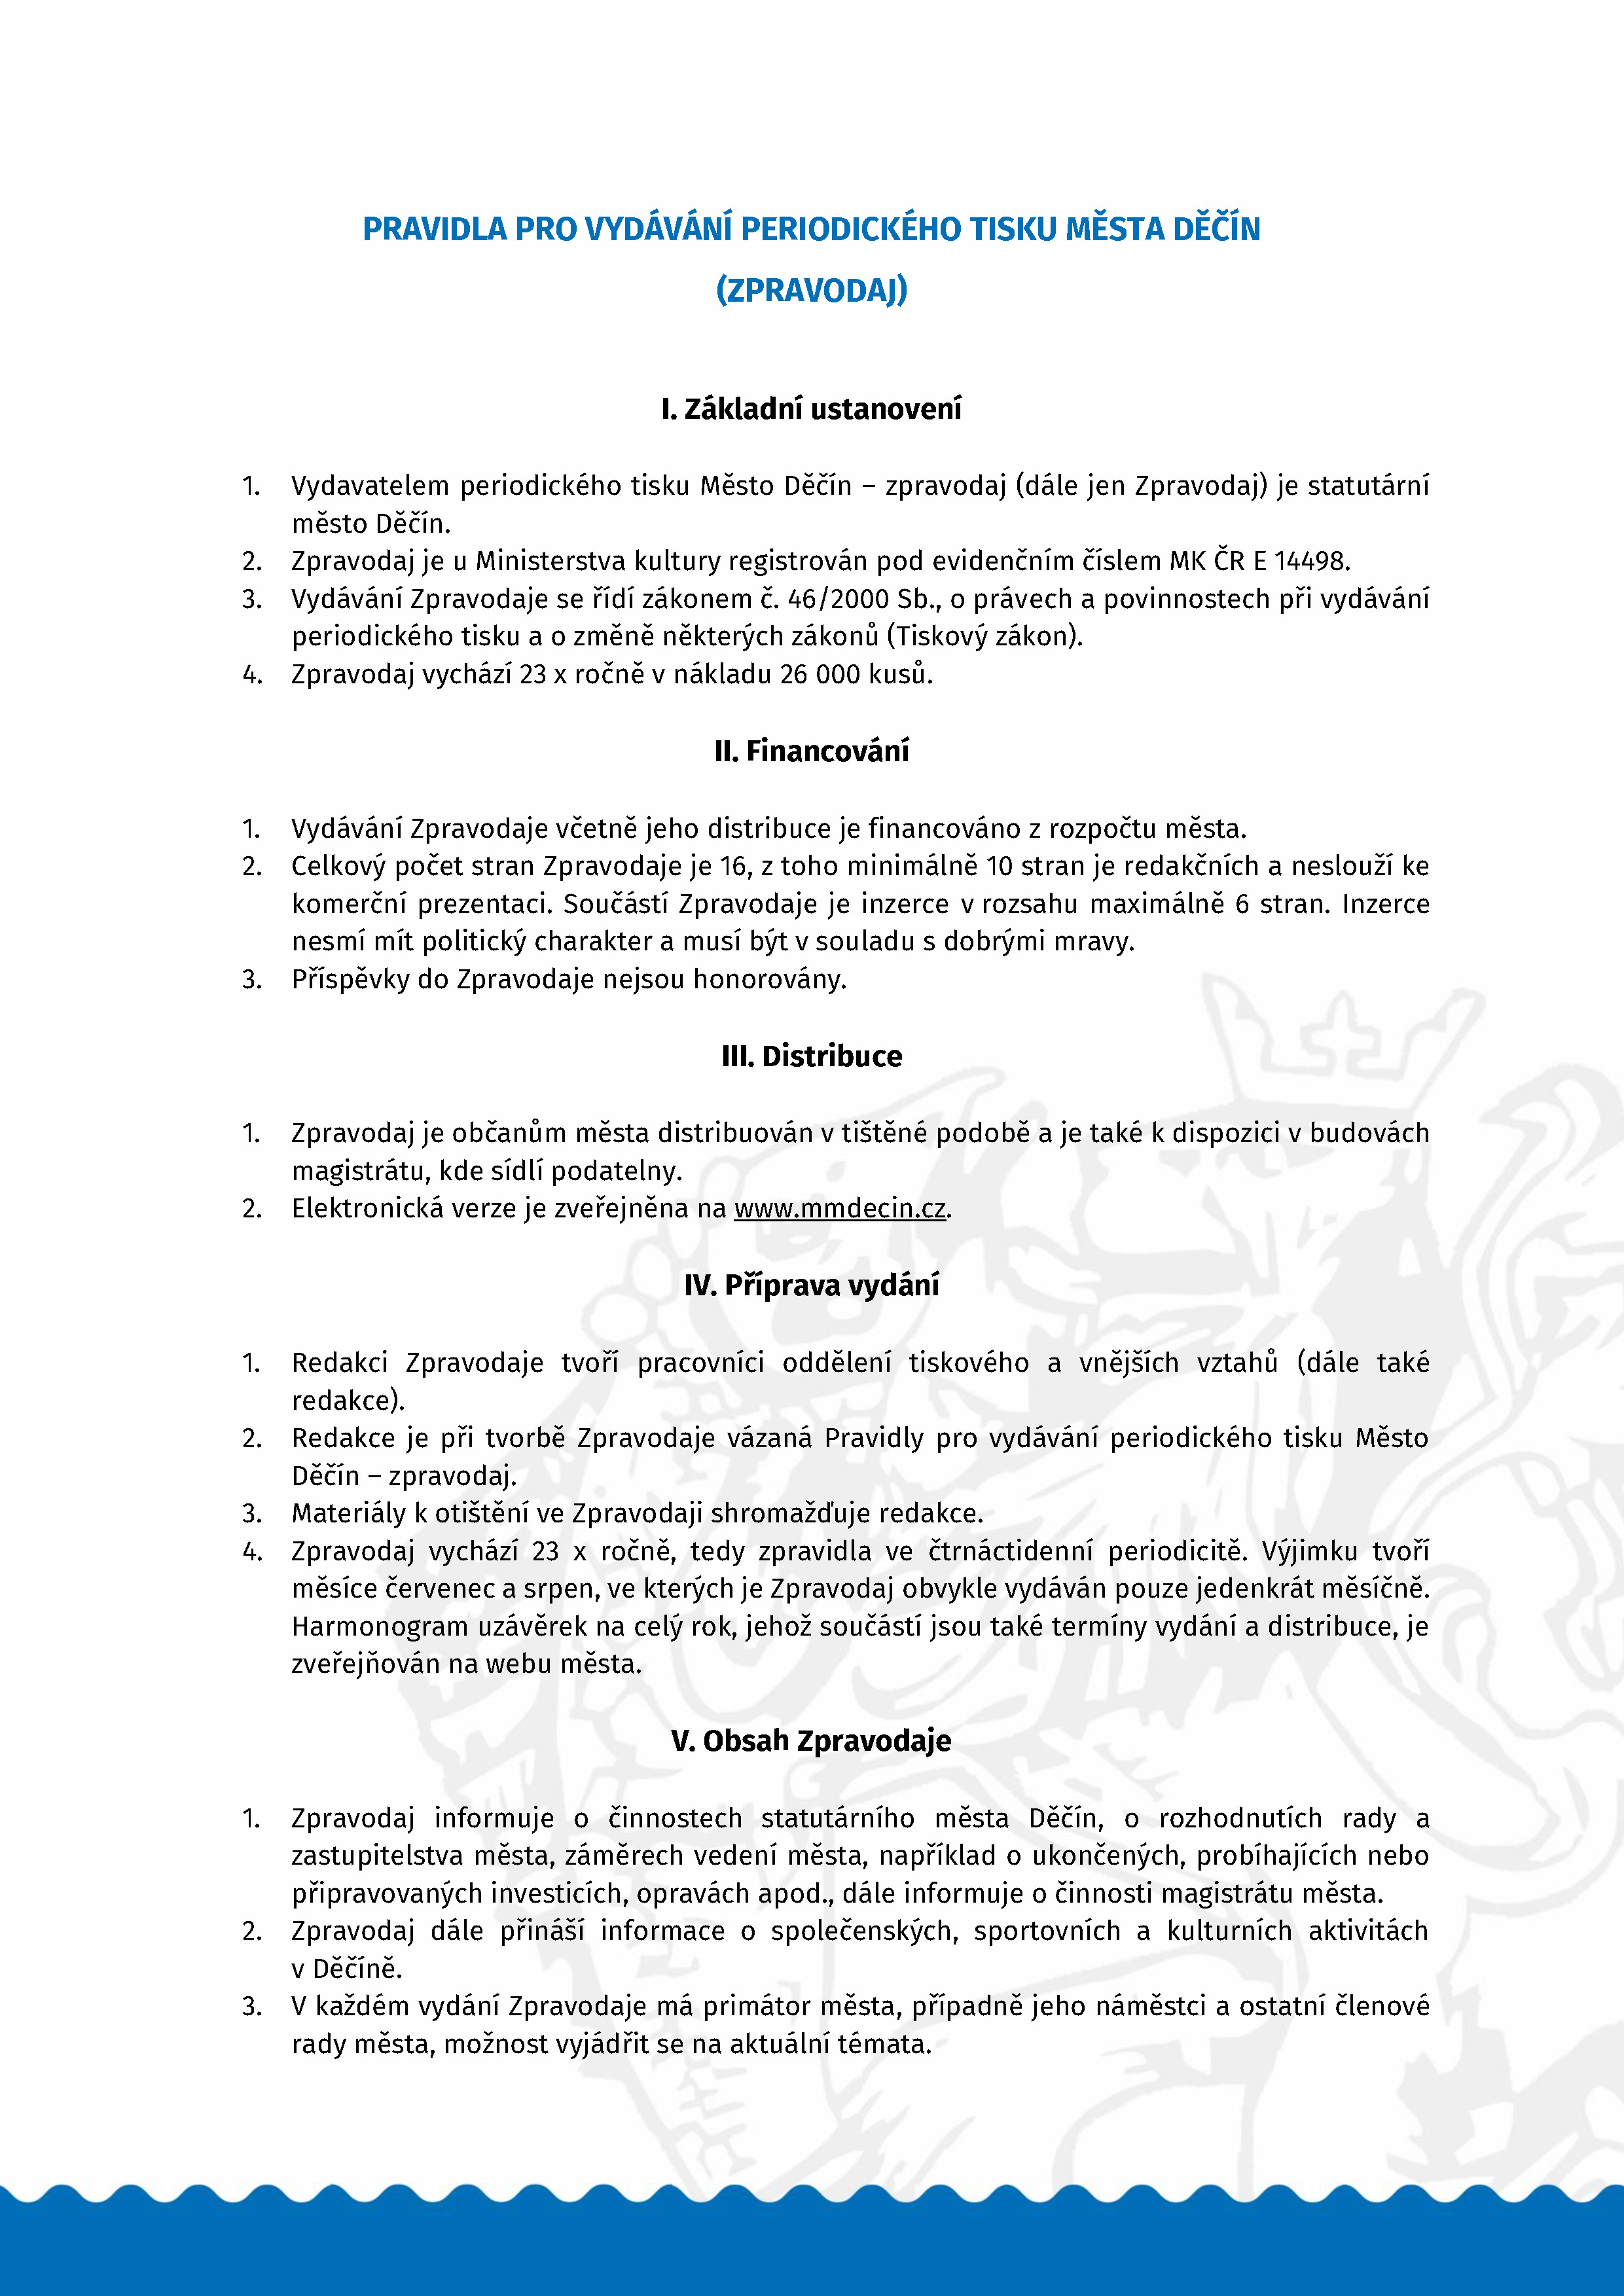 Pravidla pro vydávání periodického tisku města Děčín (Zpravodaj)